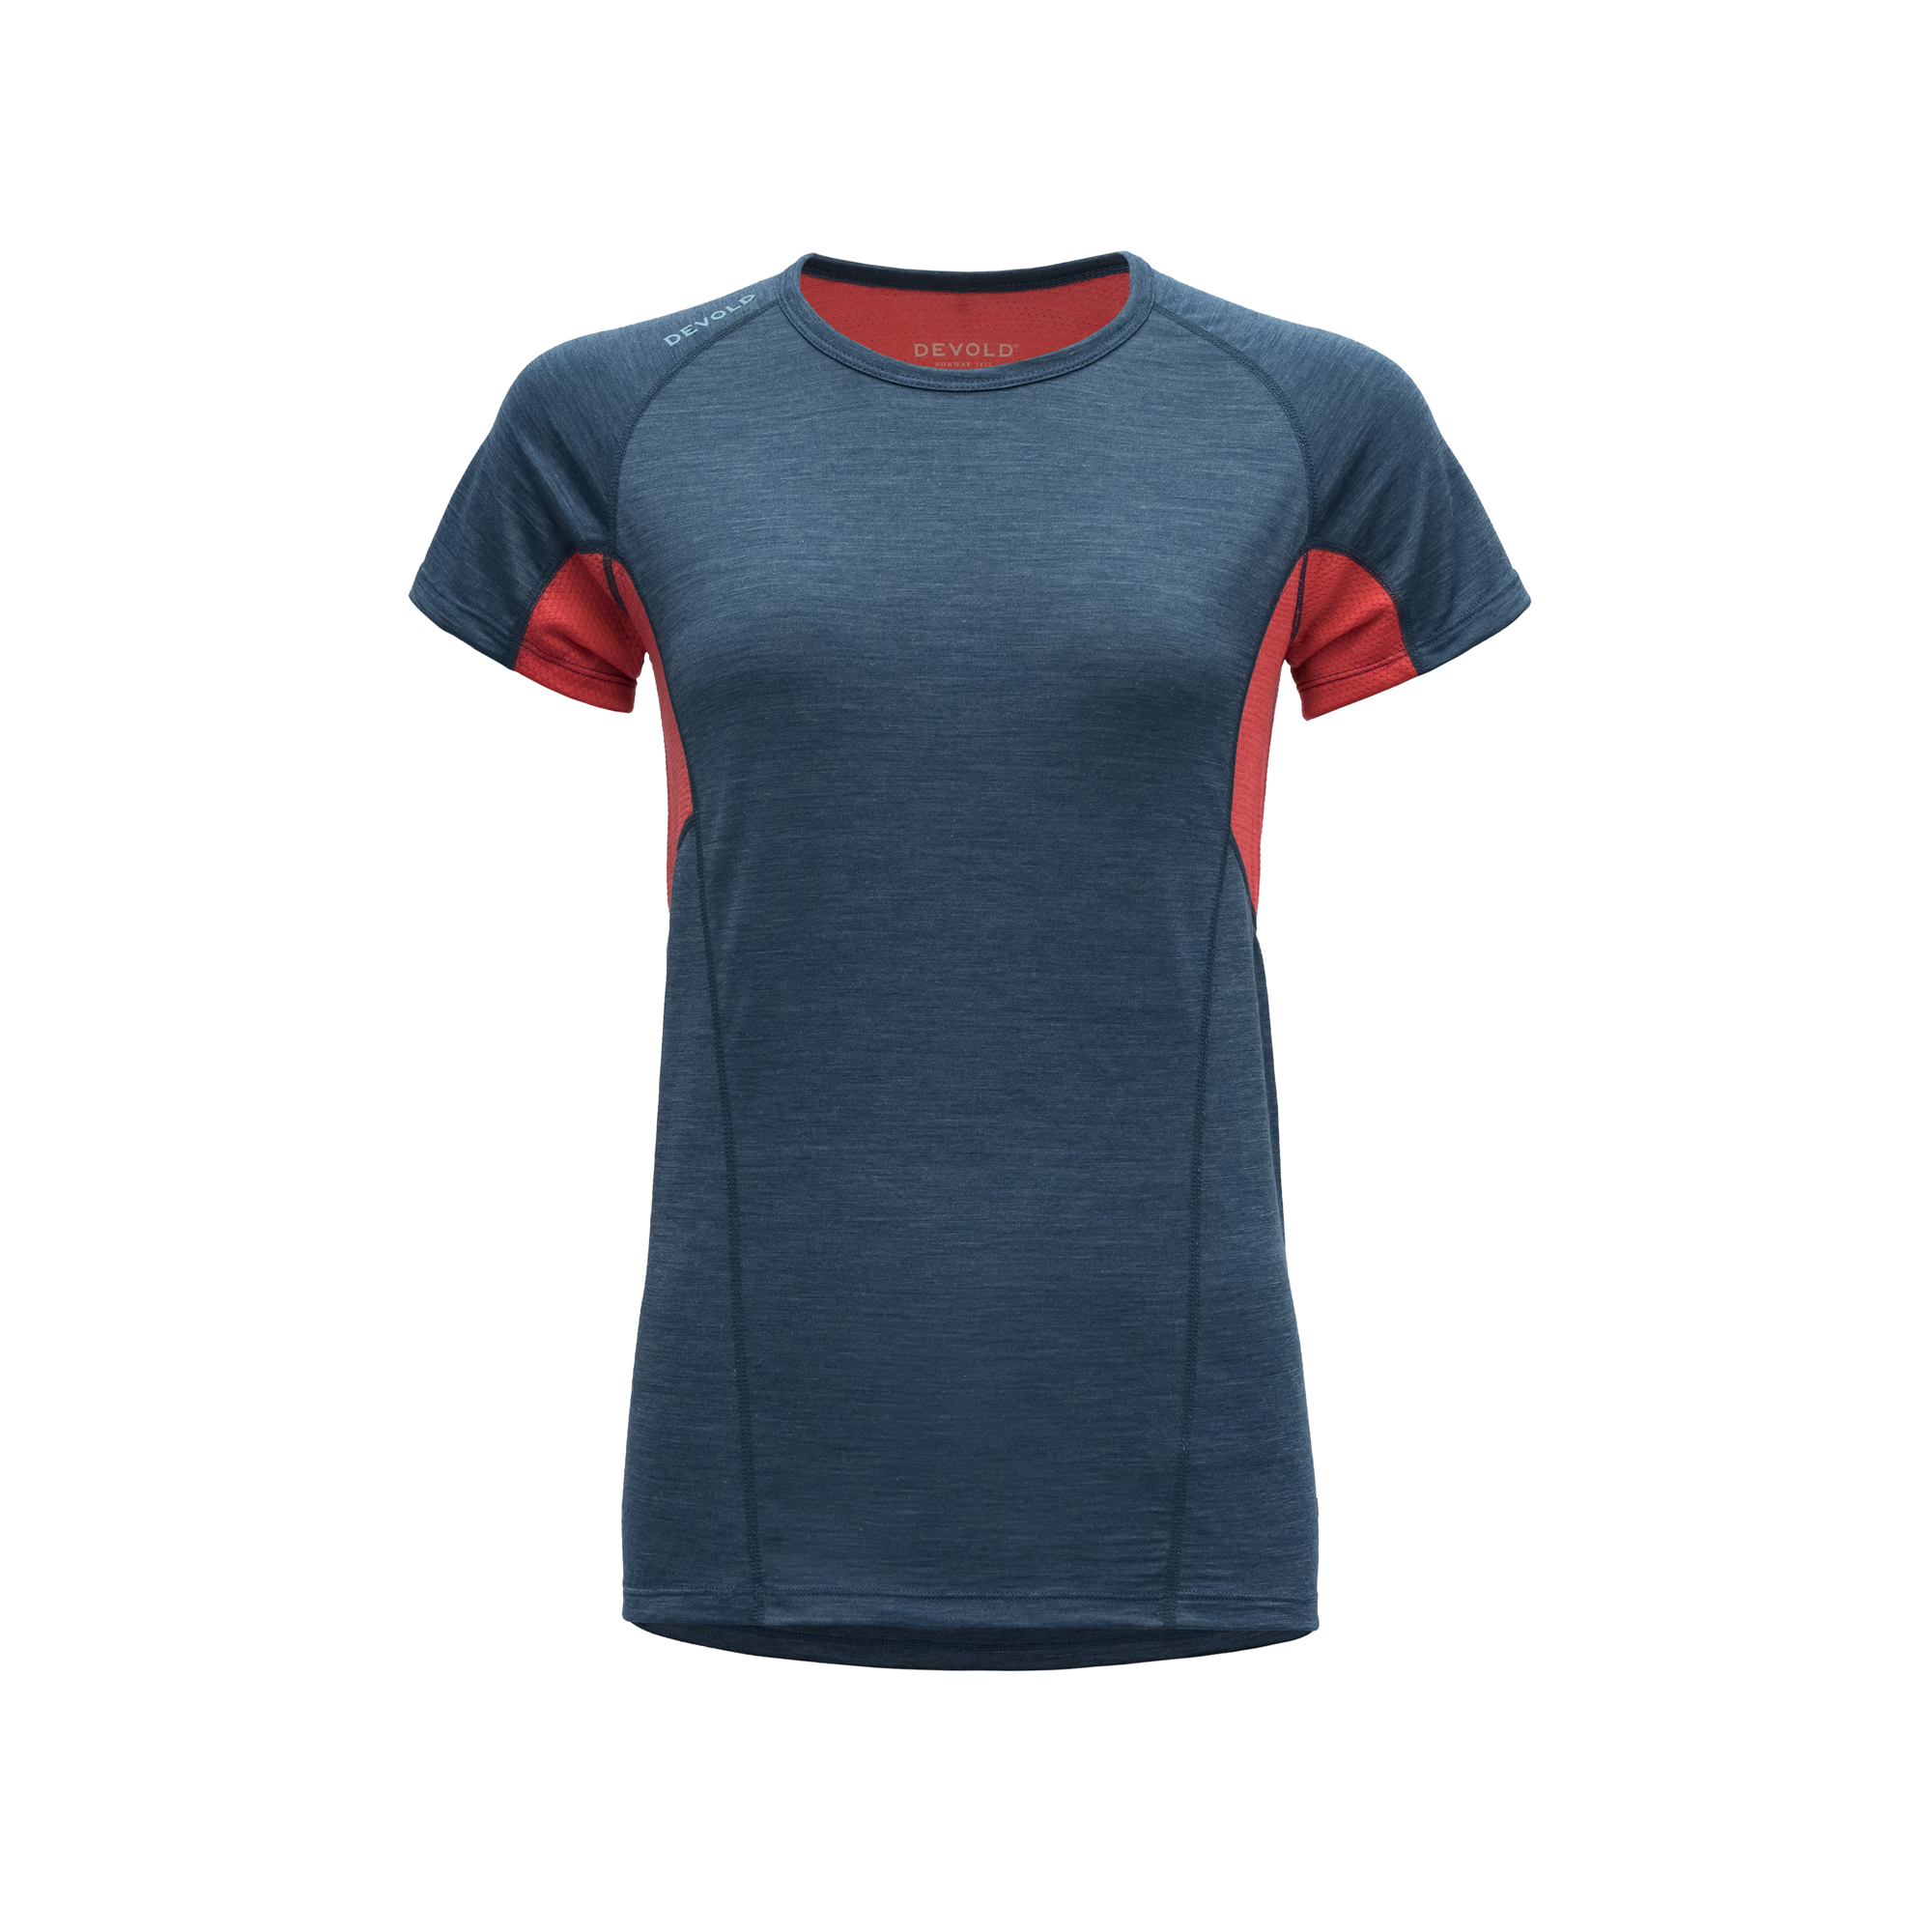 Devold Merino 130 tričko s krátkým rukávem - dámské - oranžová/modrá Velikost: S